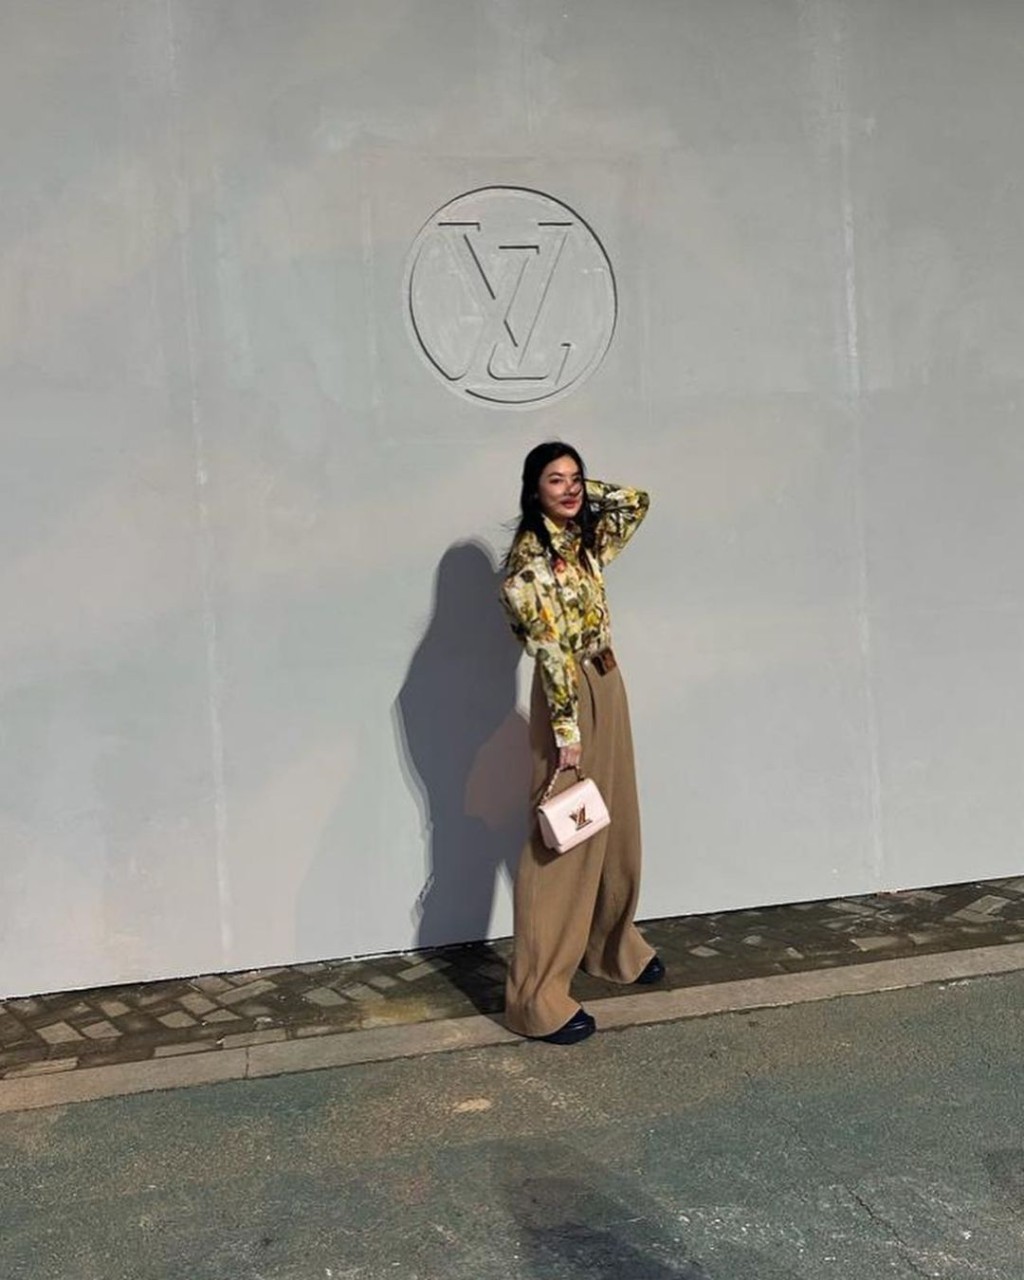 樂基兒早前飛抵韓國首爾出席時尚品牌活動。